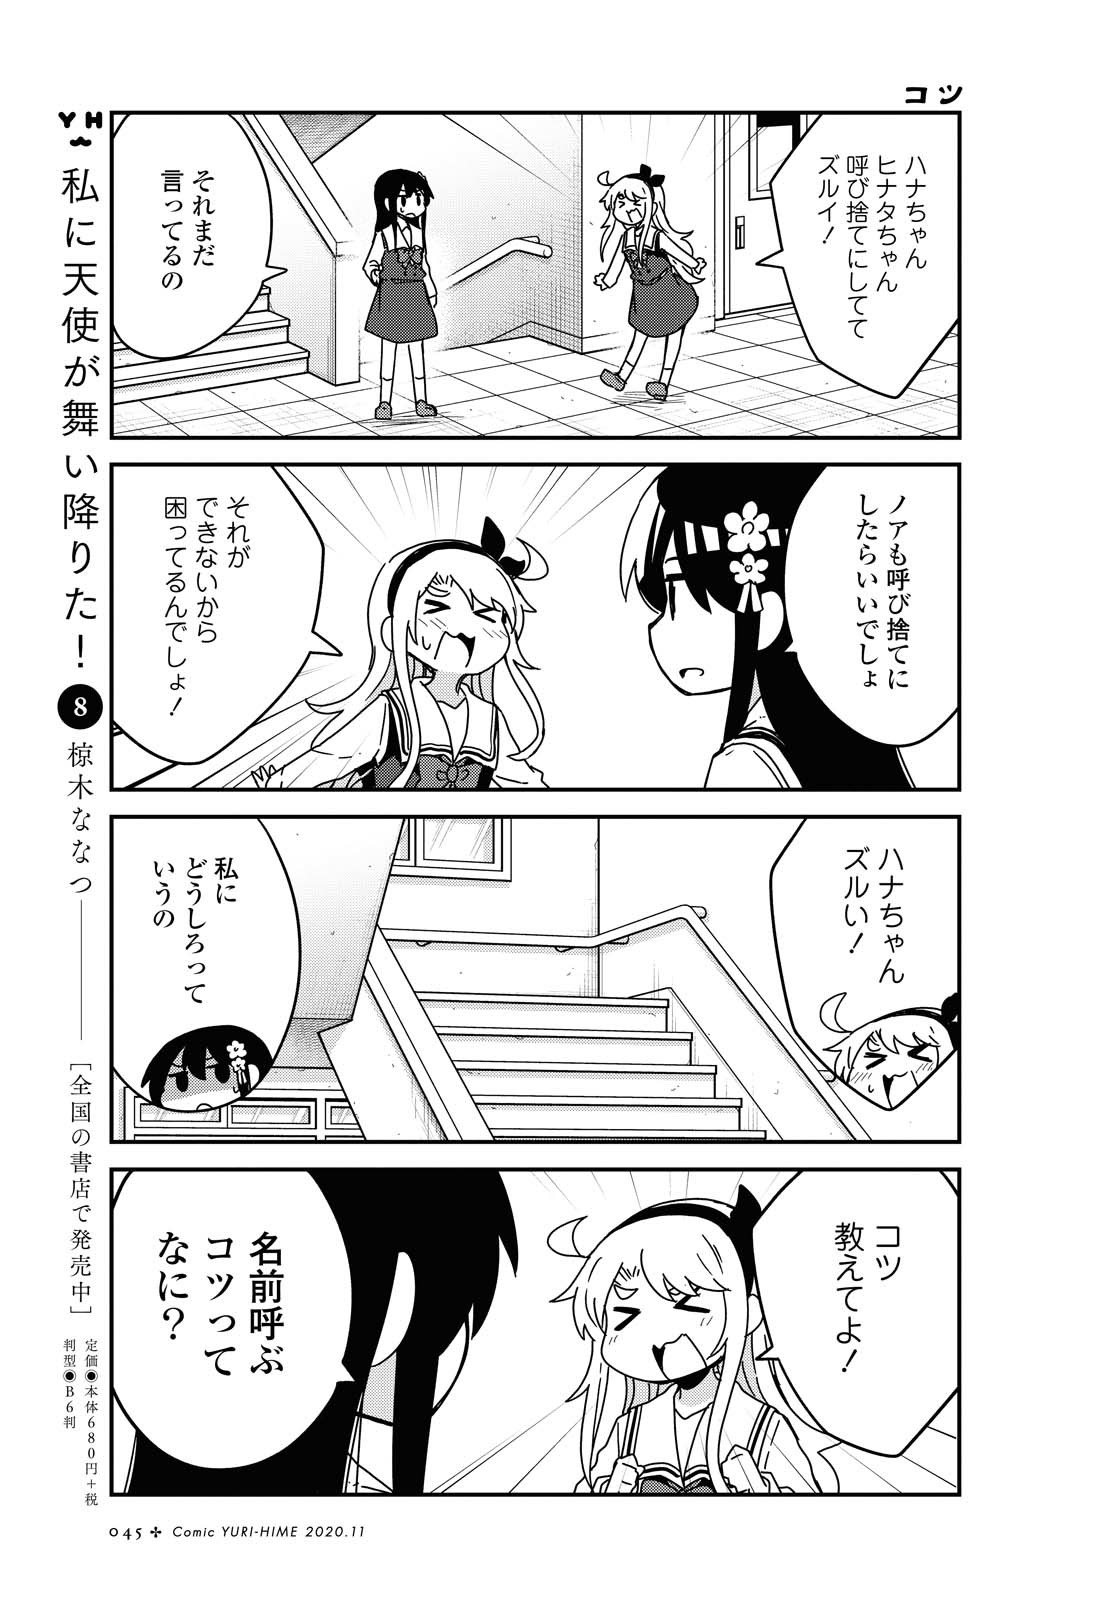 Watashi ni Tenshi ga Maiorita! - Chapter 70 - Page 3